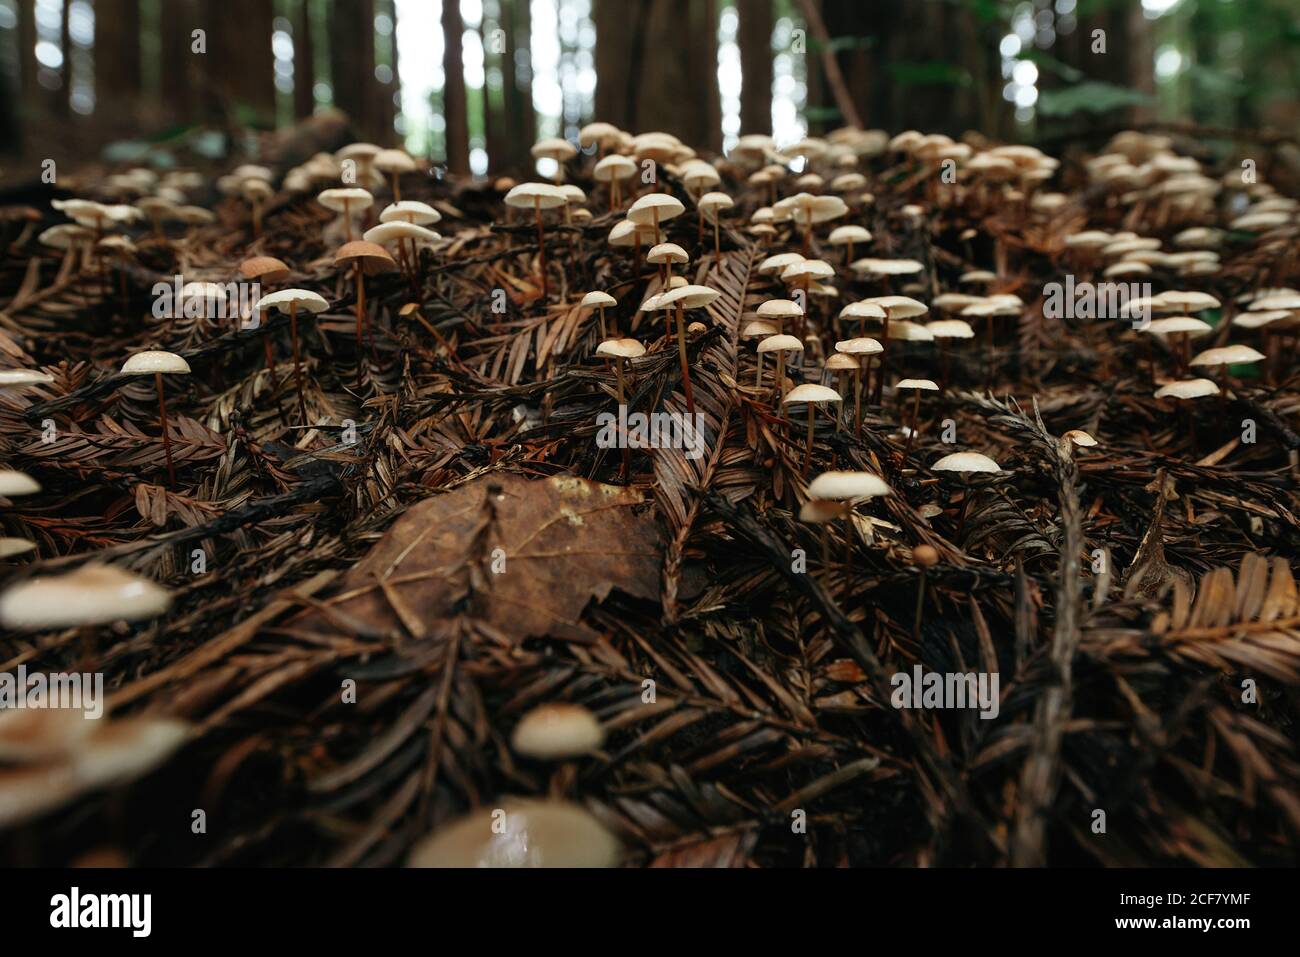 Bodenansicht von kleinen Pilzen, die auf dunkelbraun wachsen Schmutzgras Stockfoto